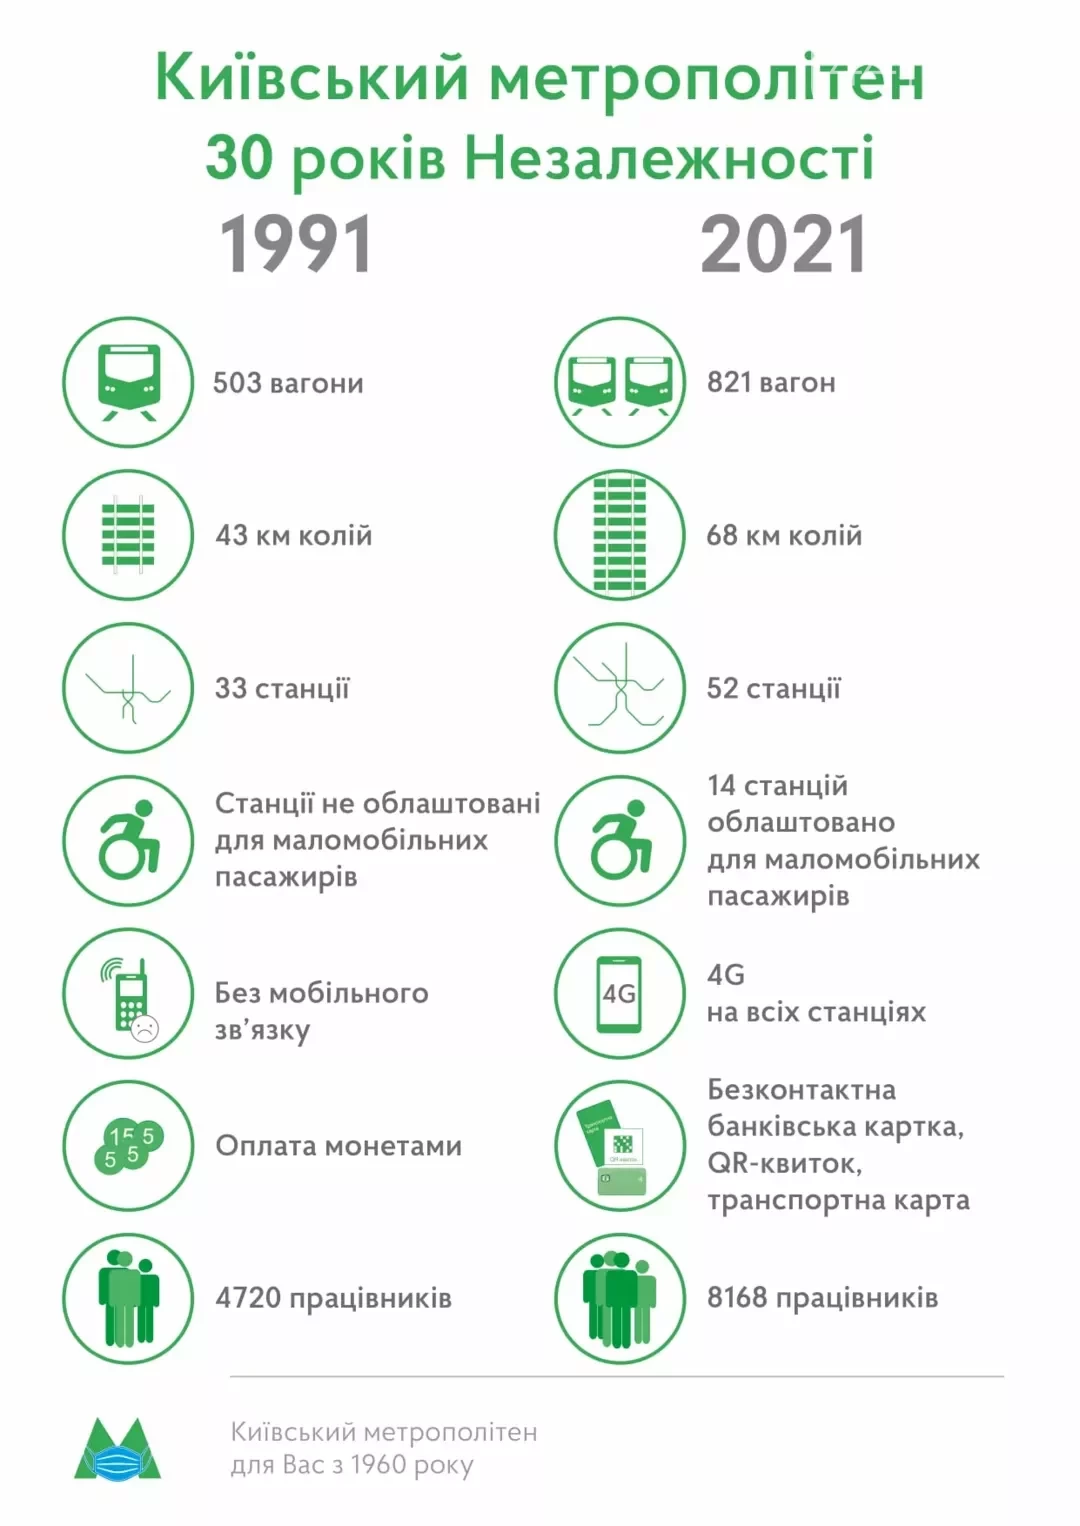 Произошедшие изменения в киевском метро за 30 лет, Источник: Facebook-страница начальника КП «Киевский метрополитен